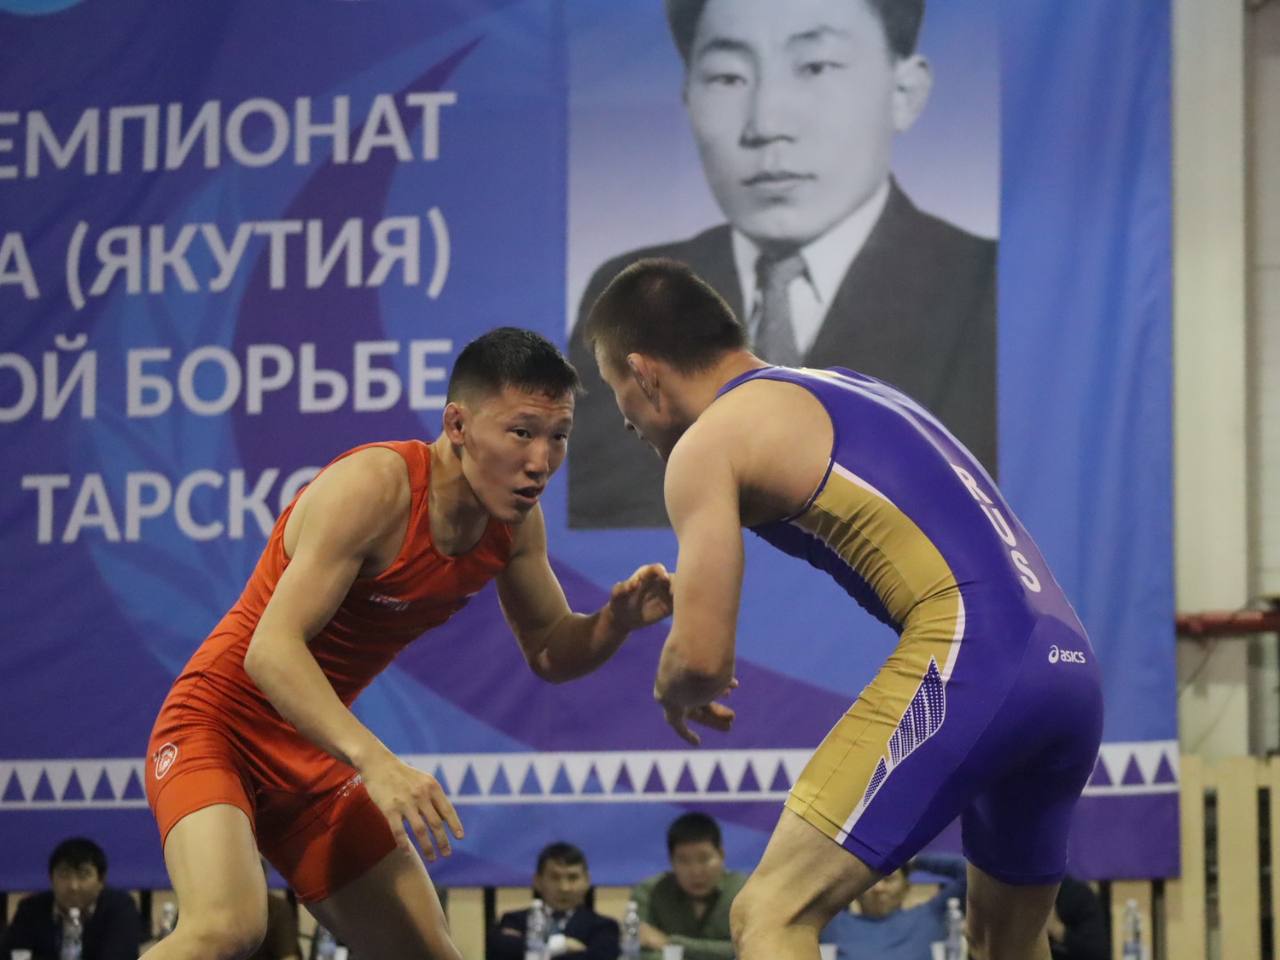 Якутские борцы примут участие в чемпионате Дальнего Востока в Улан-Удэ